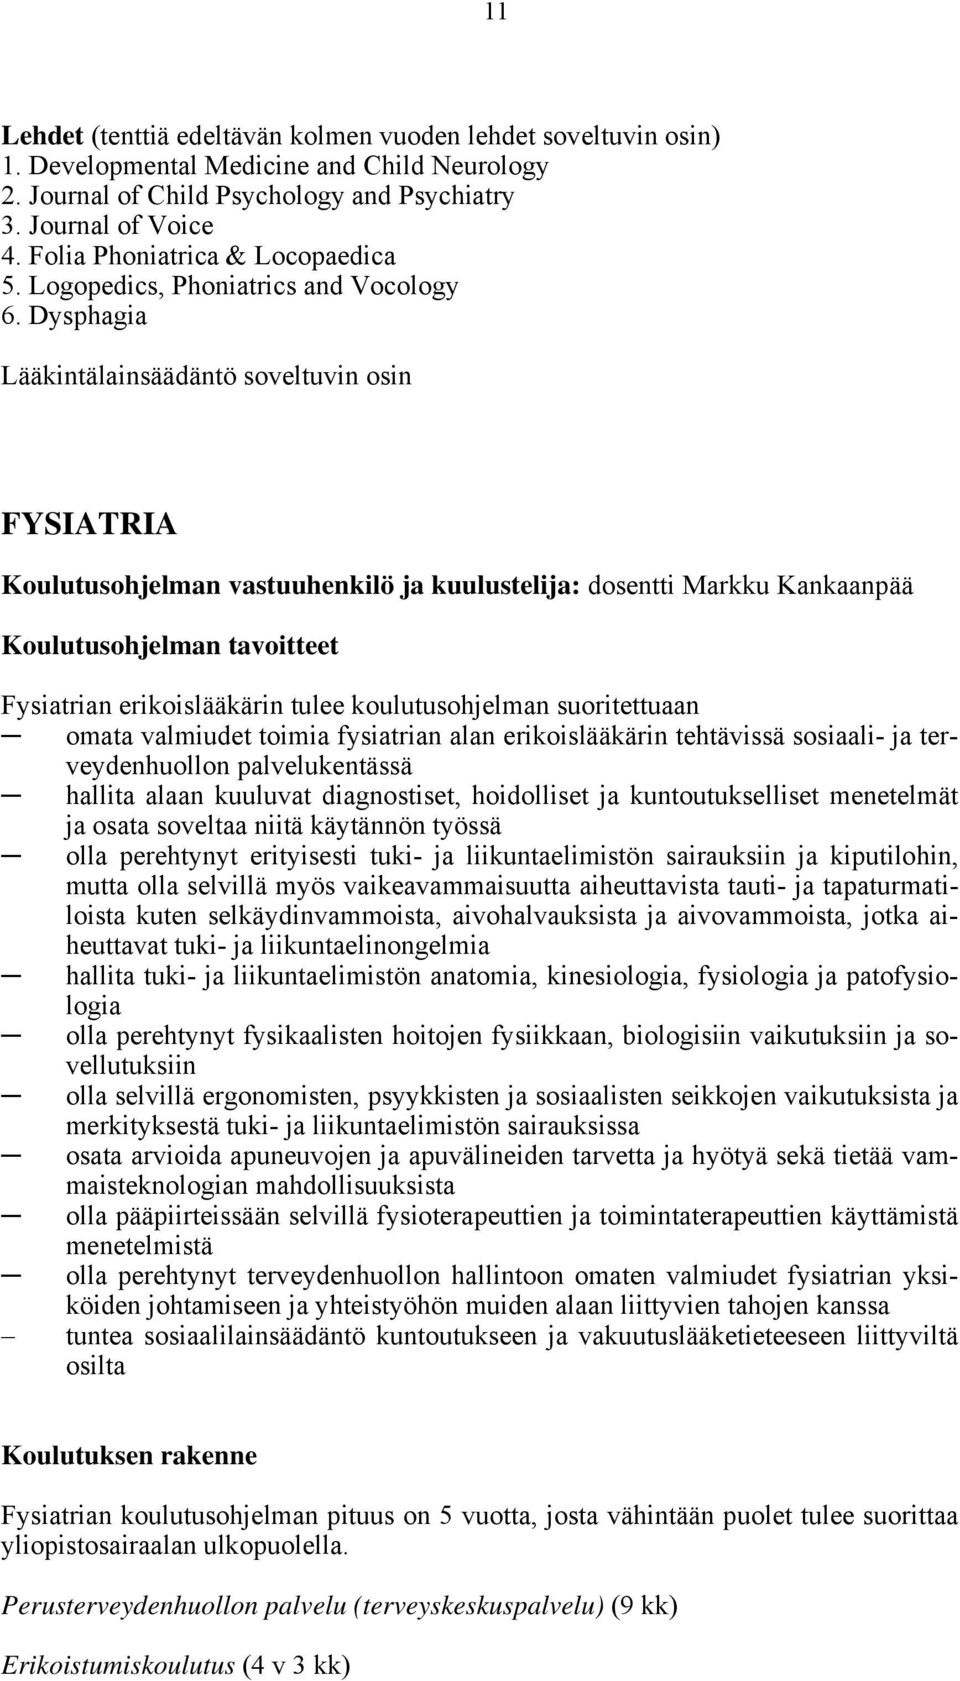 Dysphagia Lääkintälainsäädäntö soveltuvin osin FYSIATRIA Koulutusohjelman vastuuhenkilö ja kuulustelija: dosentti Markku Kankaanpää Koulutusohjelman tavoitteet Fysiatrian erikoislääkärin tulee